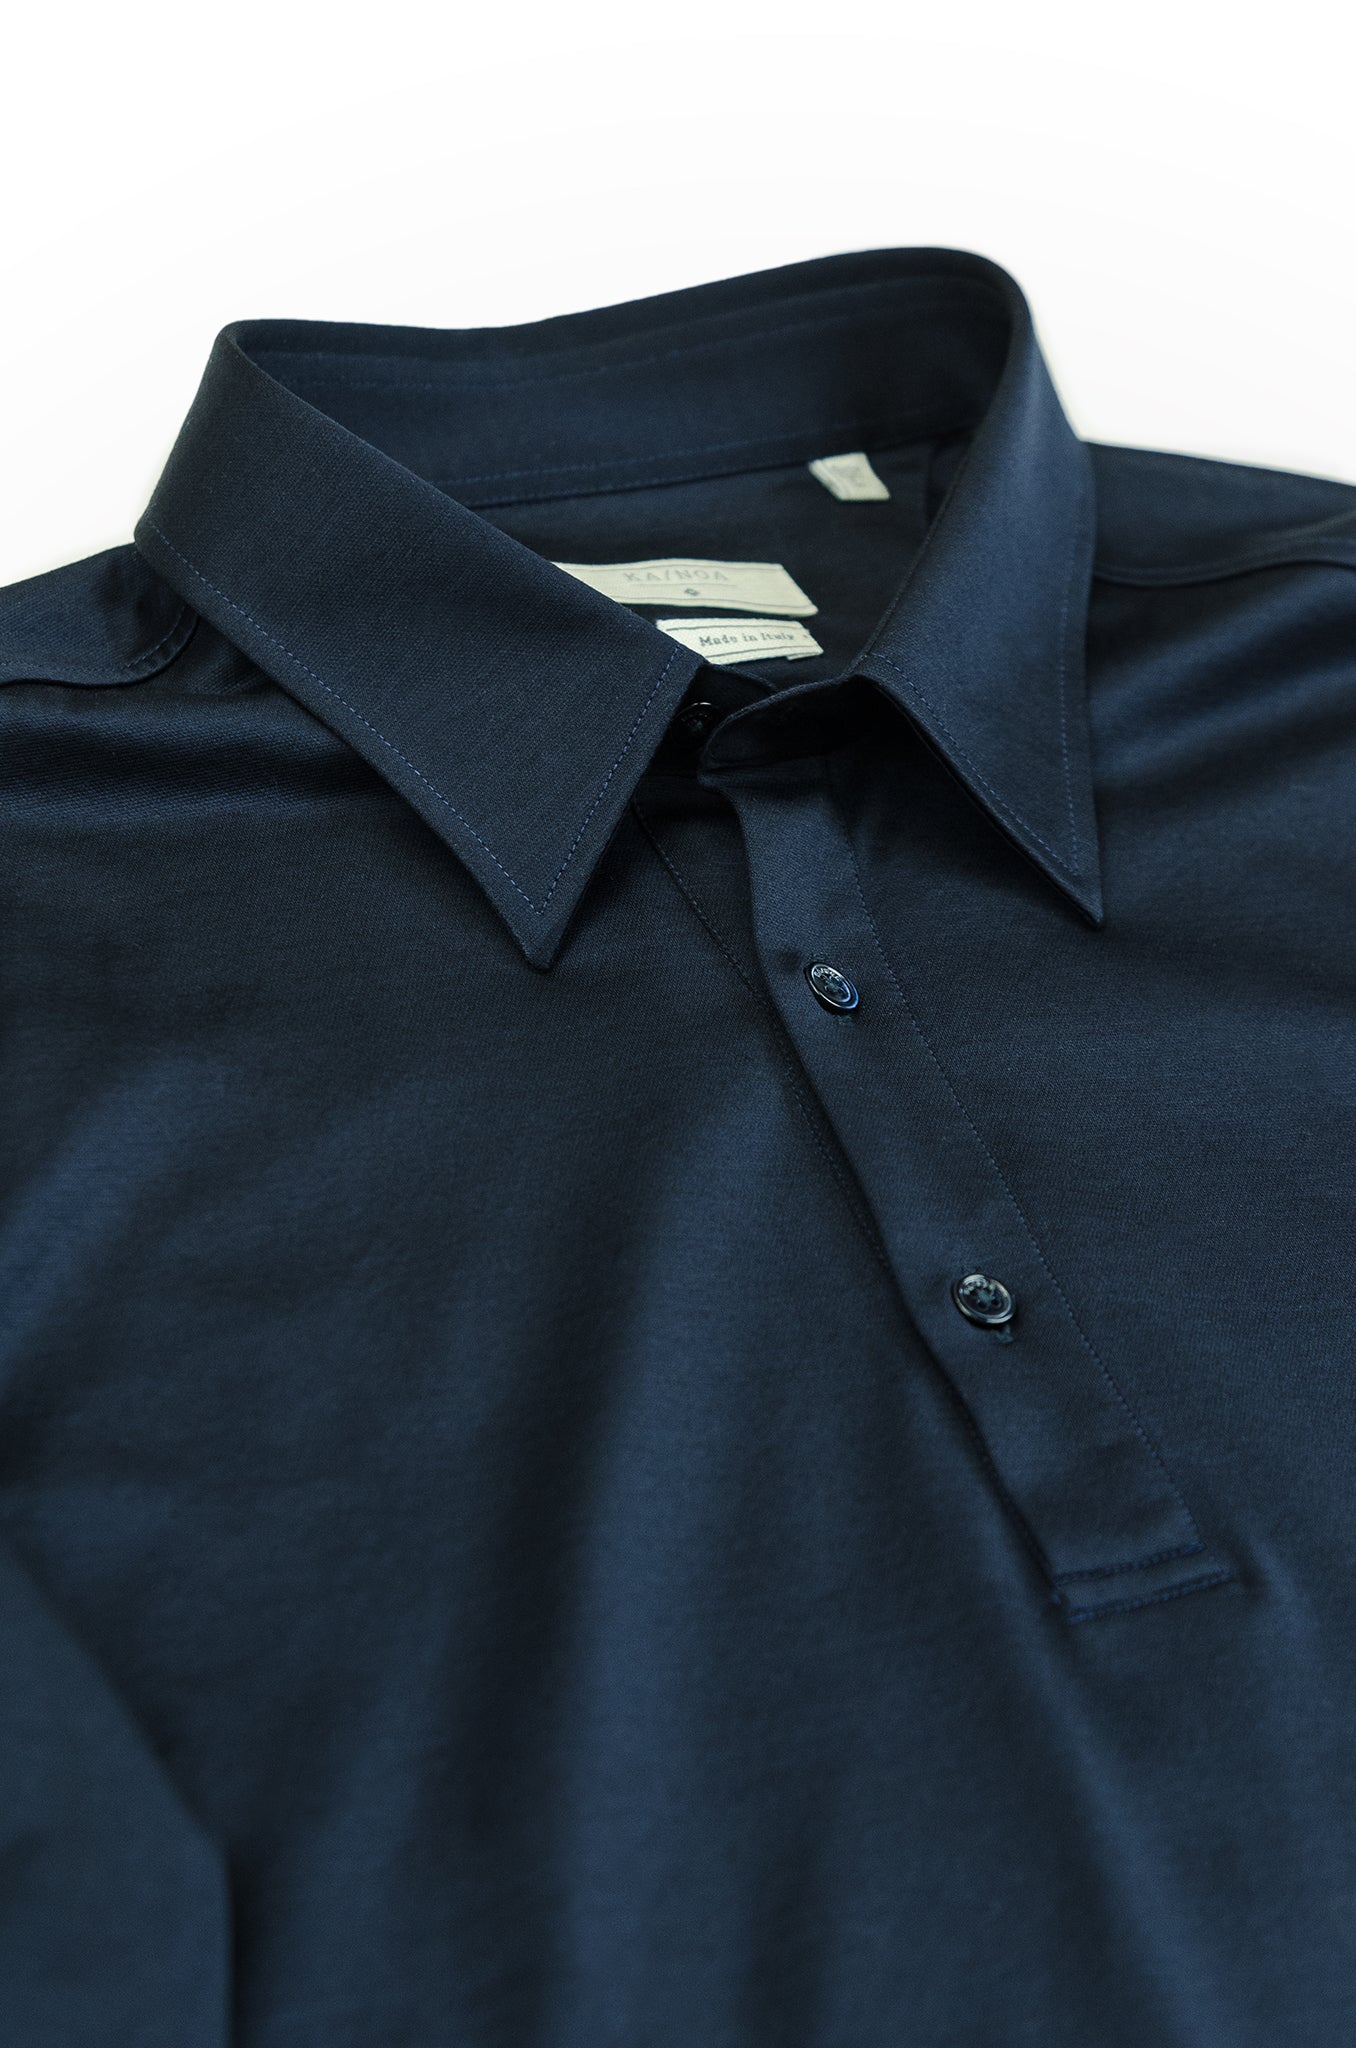 Jean long-sleeved polo in fine jersey (dark blue)